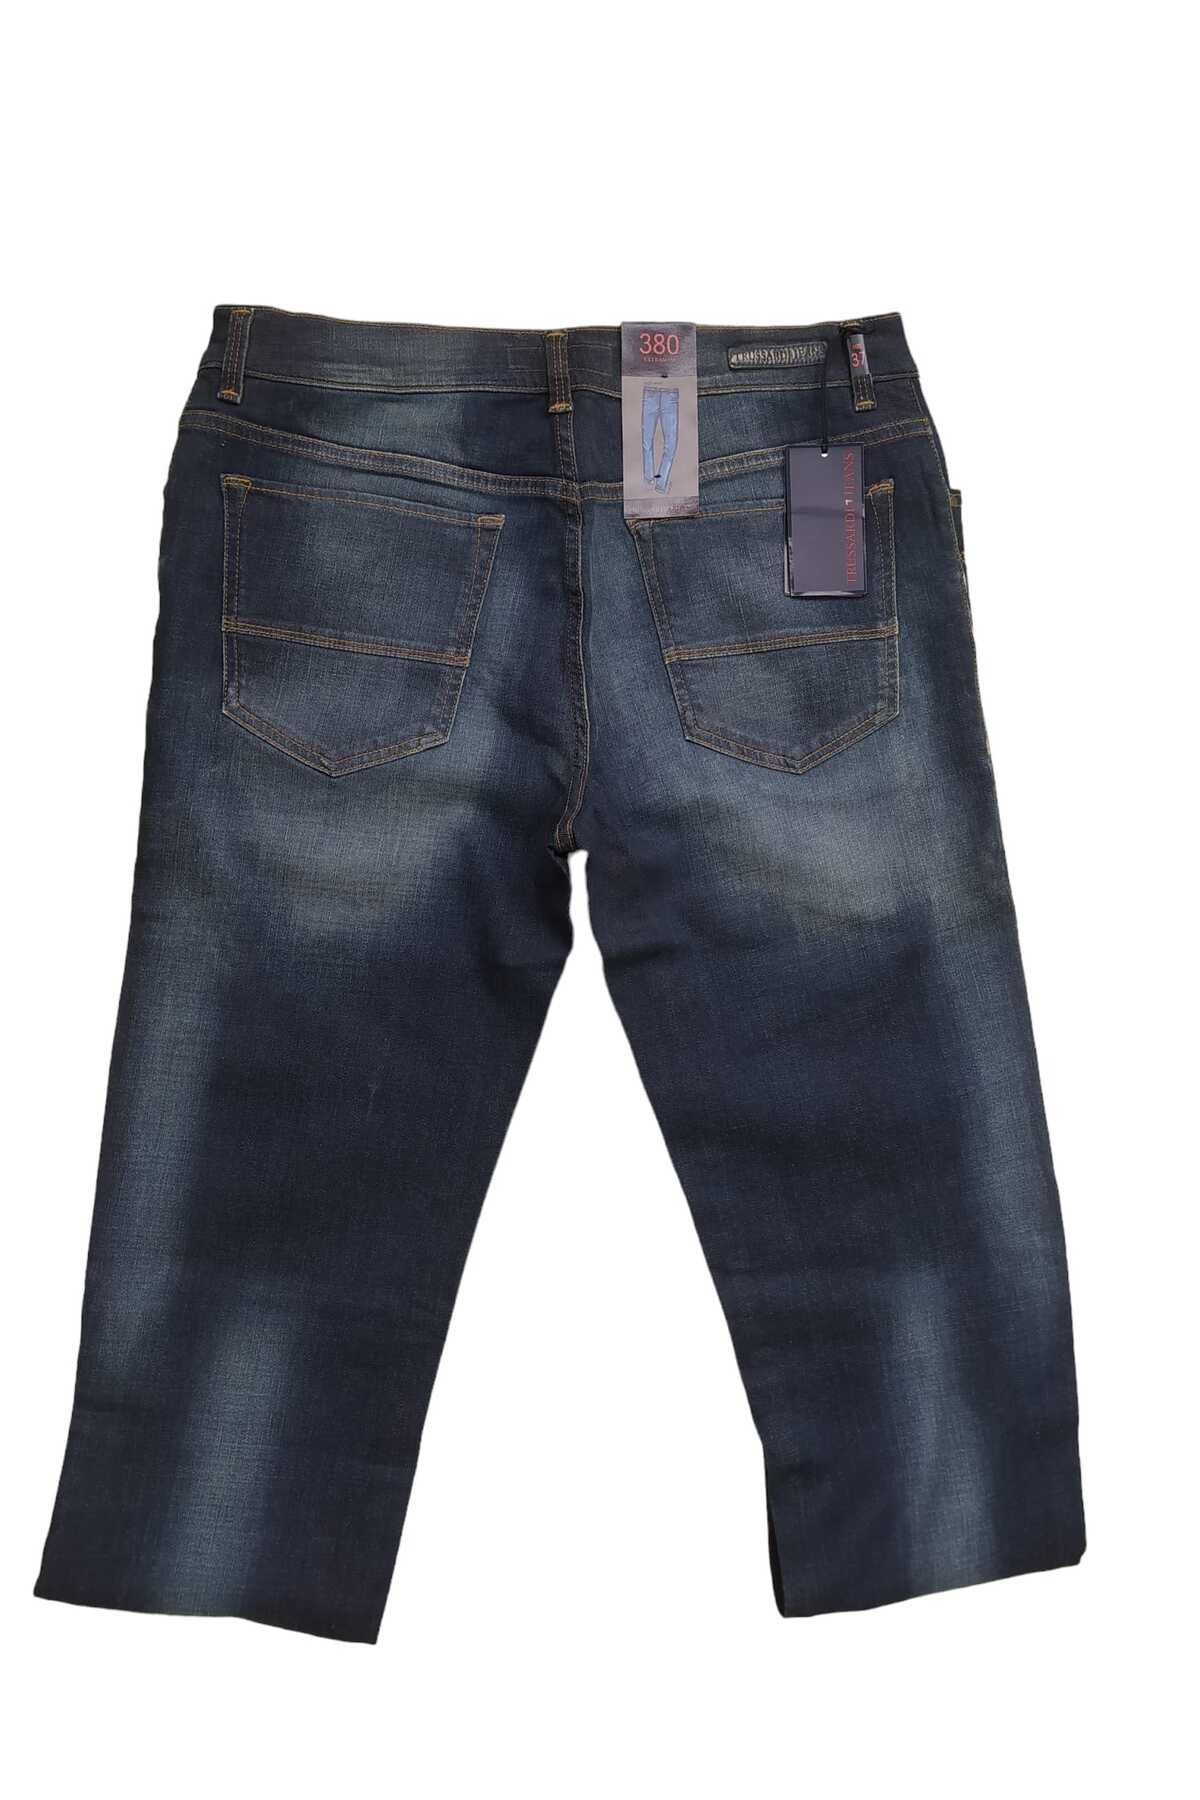 Trussardi Jeans 380 EXTRA SLIM